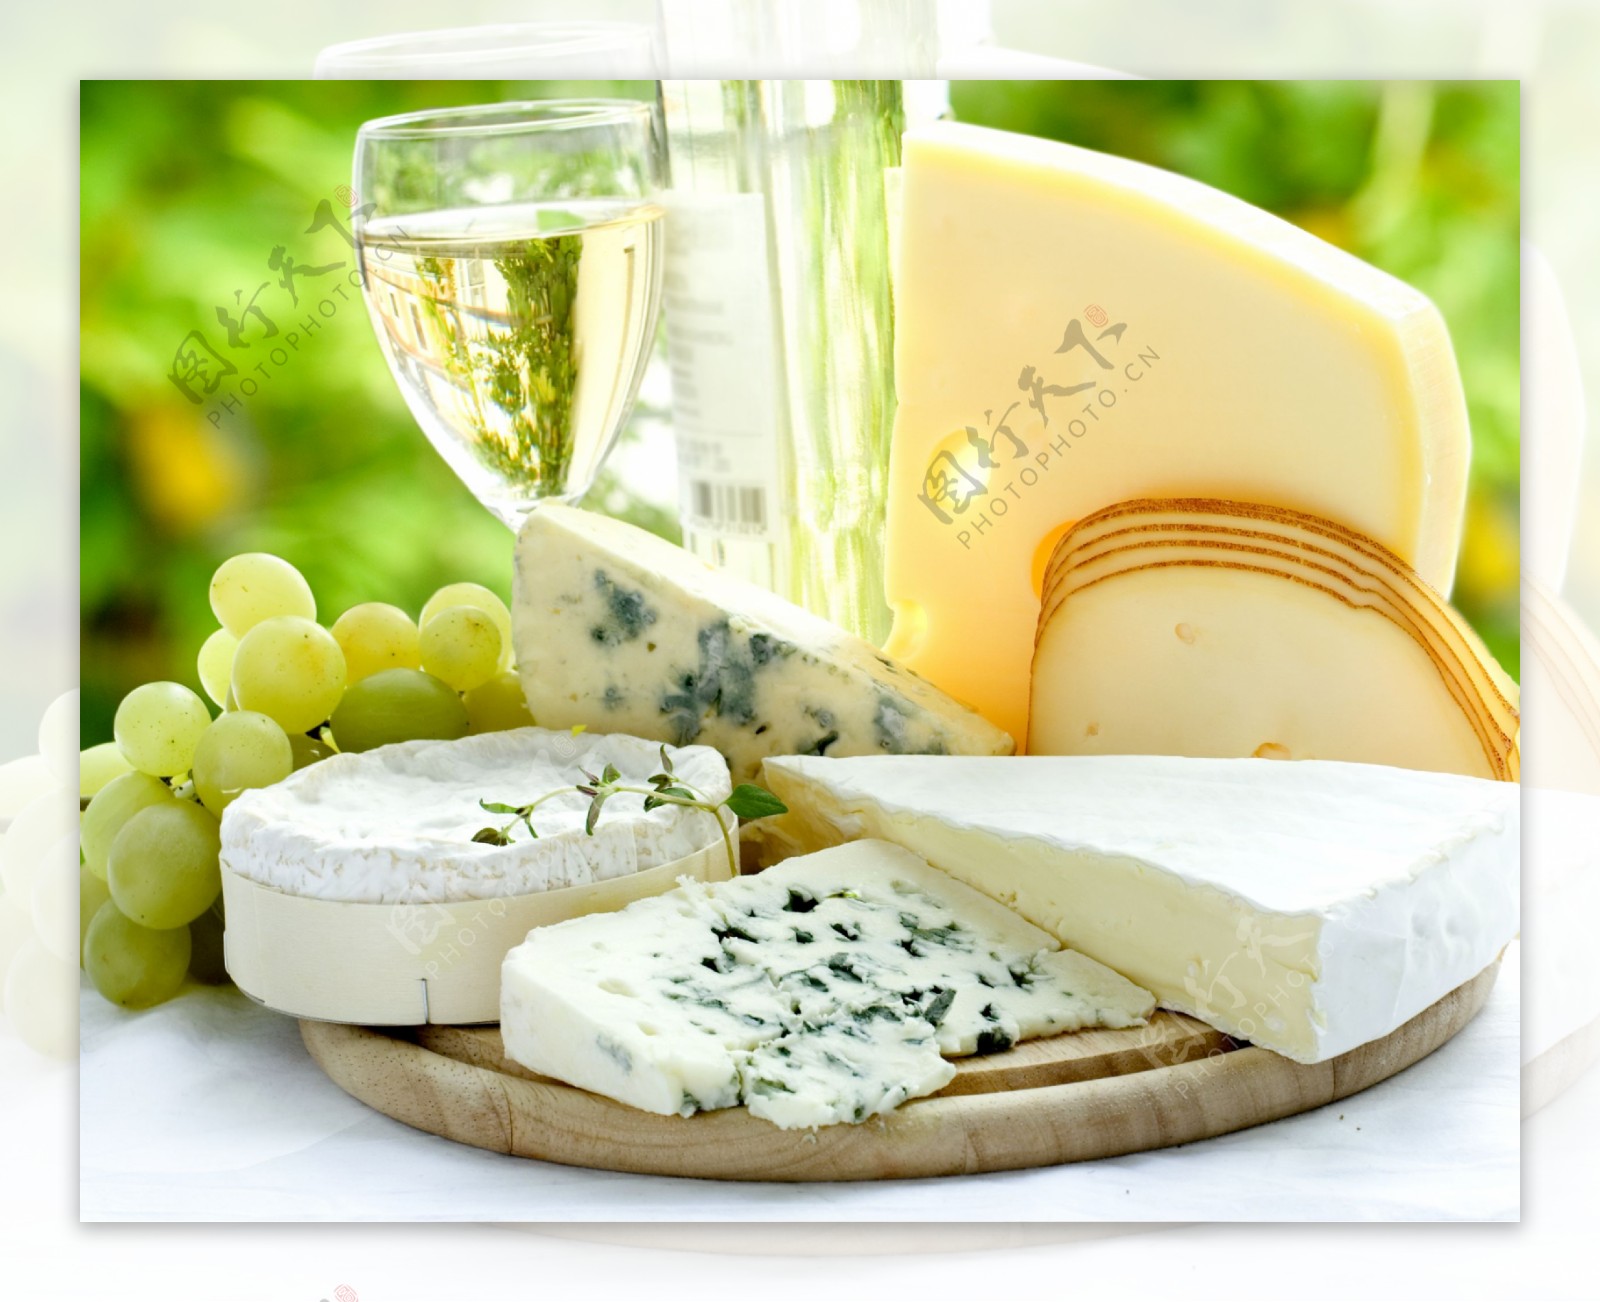 干白葡萄酒与乳酪图片